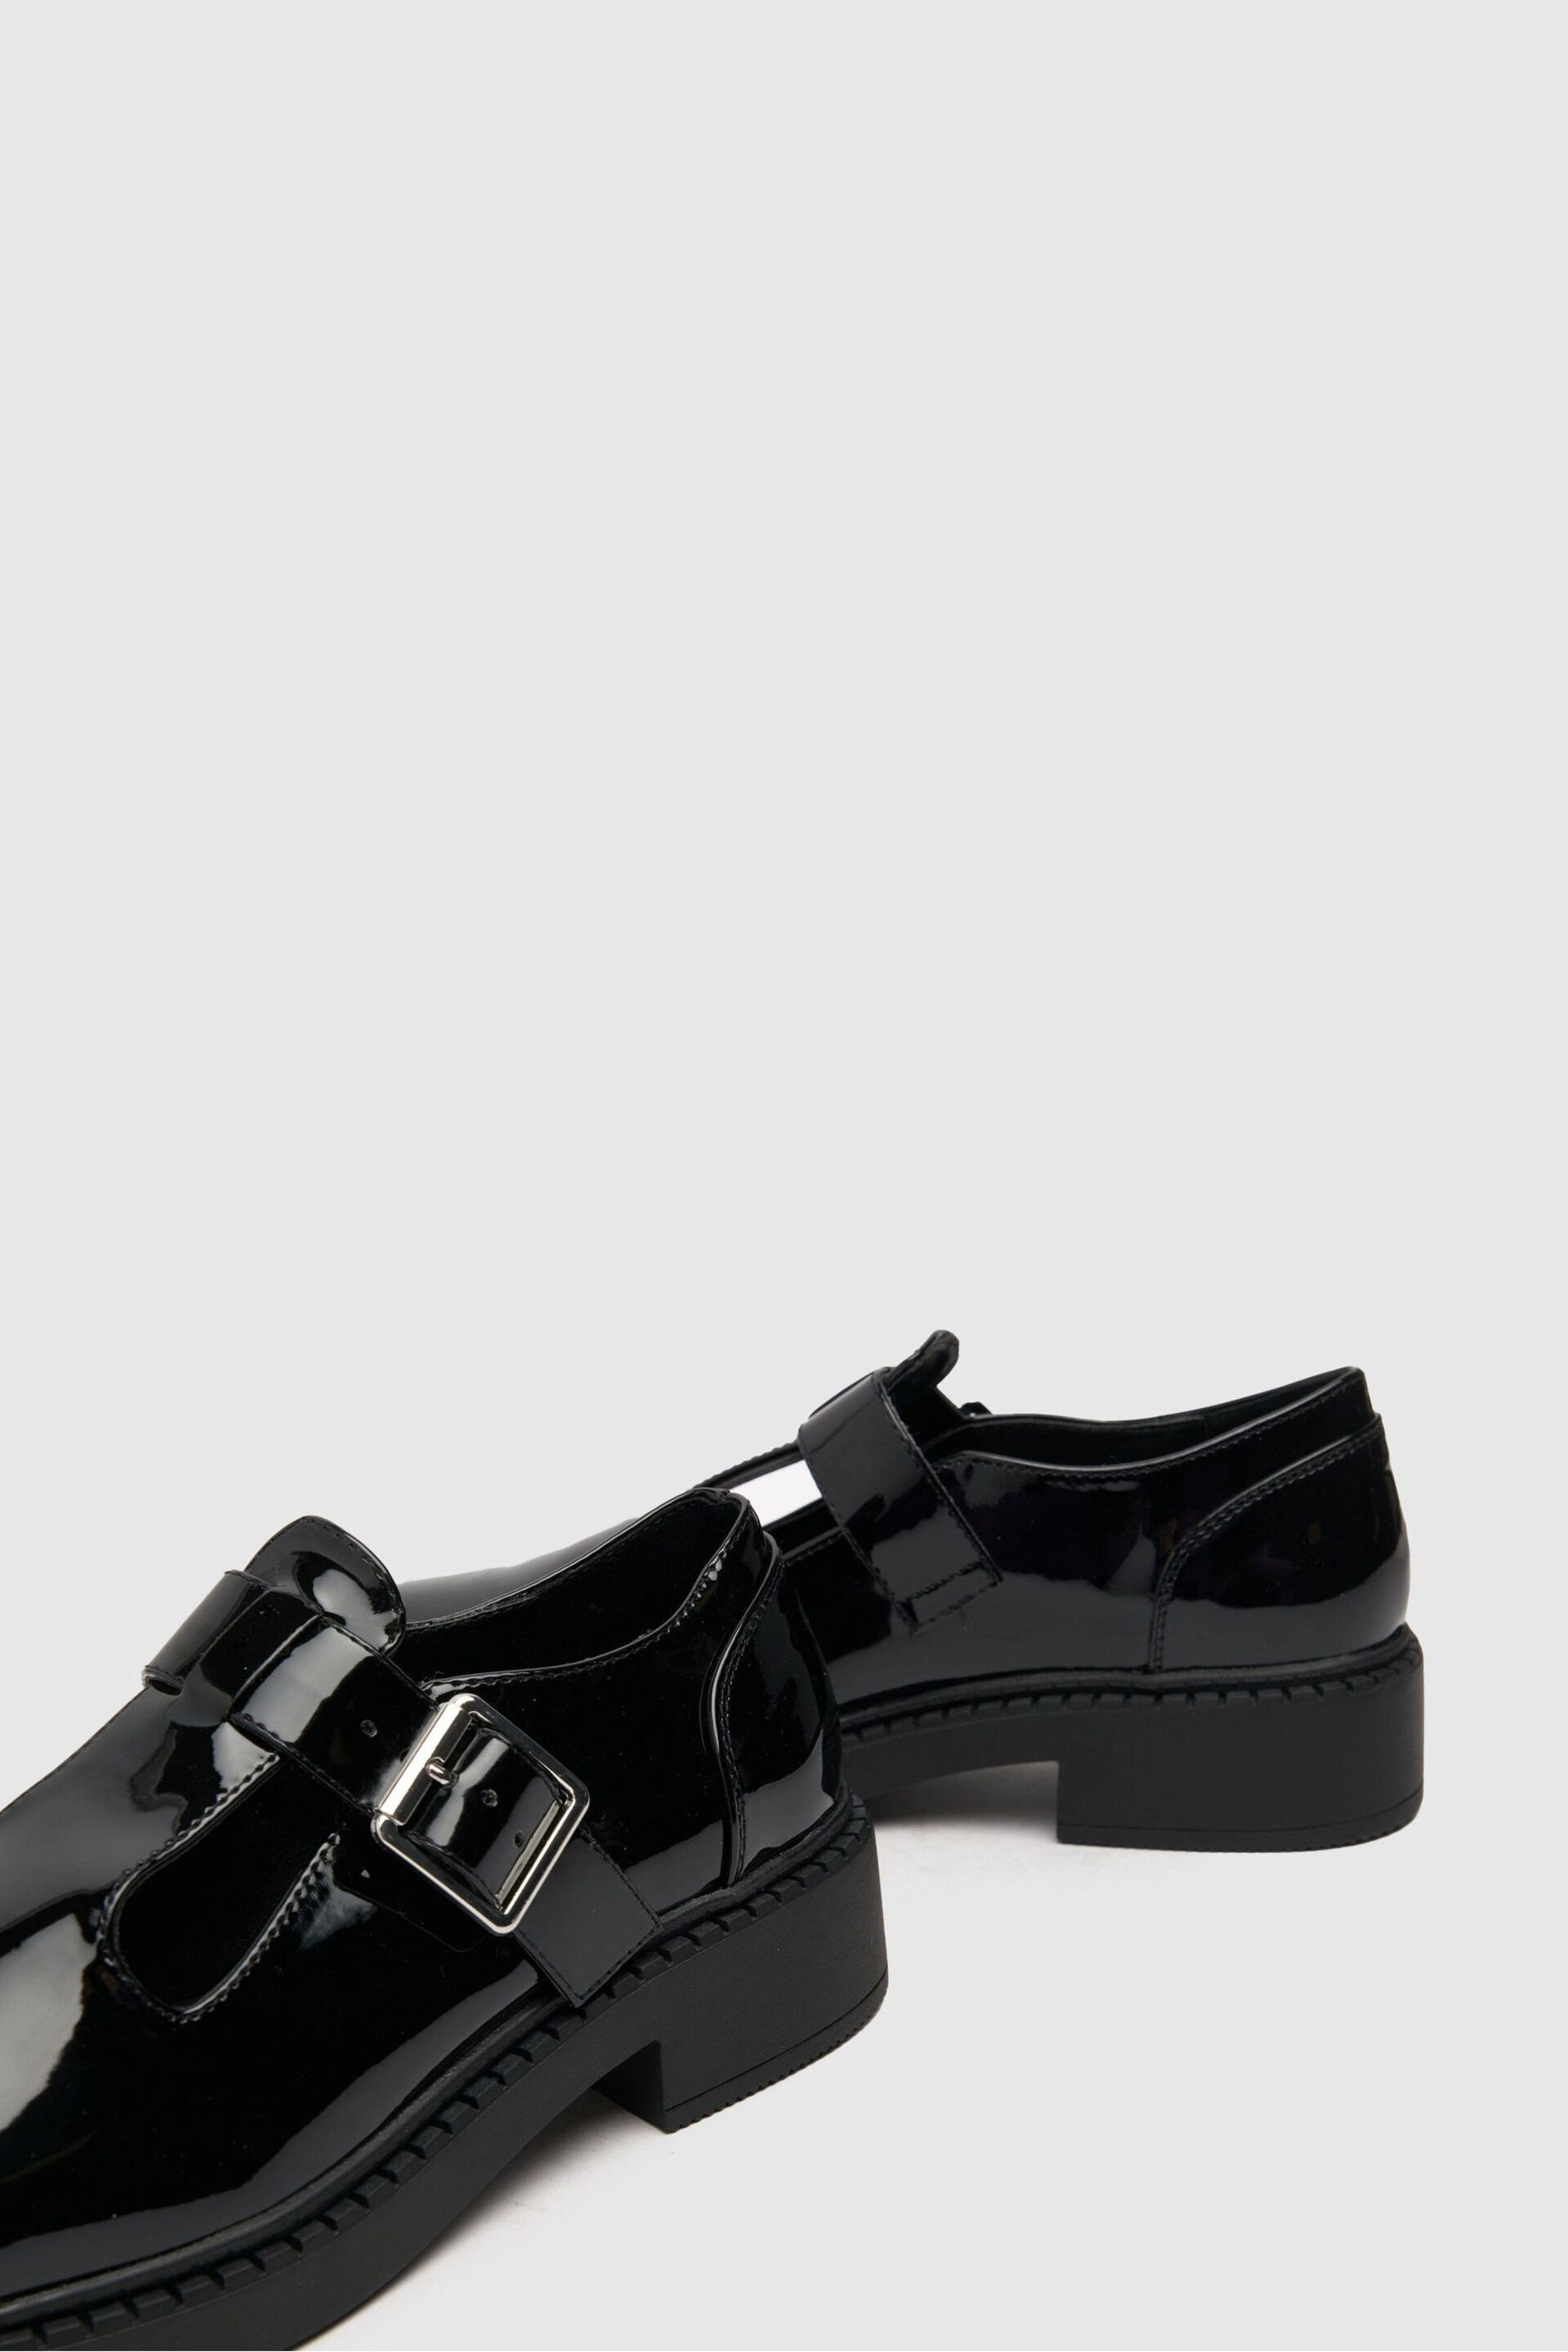 Schuh Leah Patent Black T-Bar Shoes - Image 4 of 4